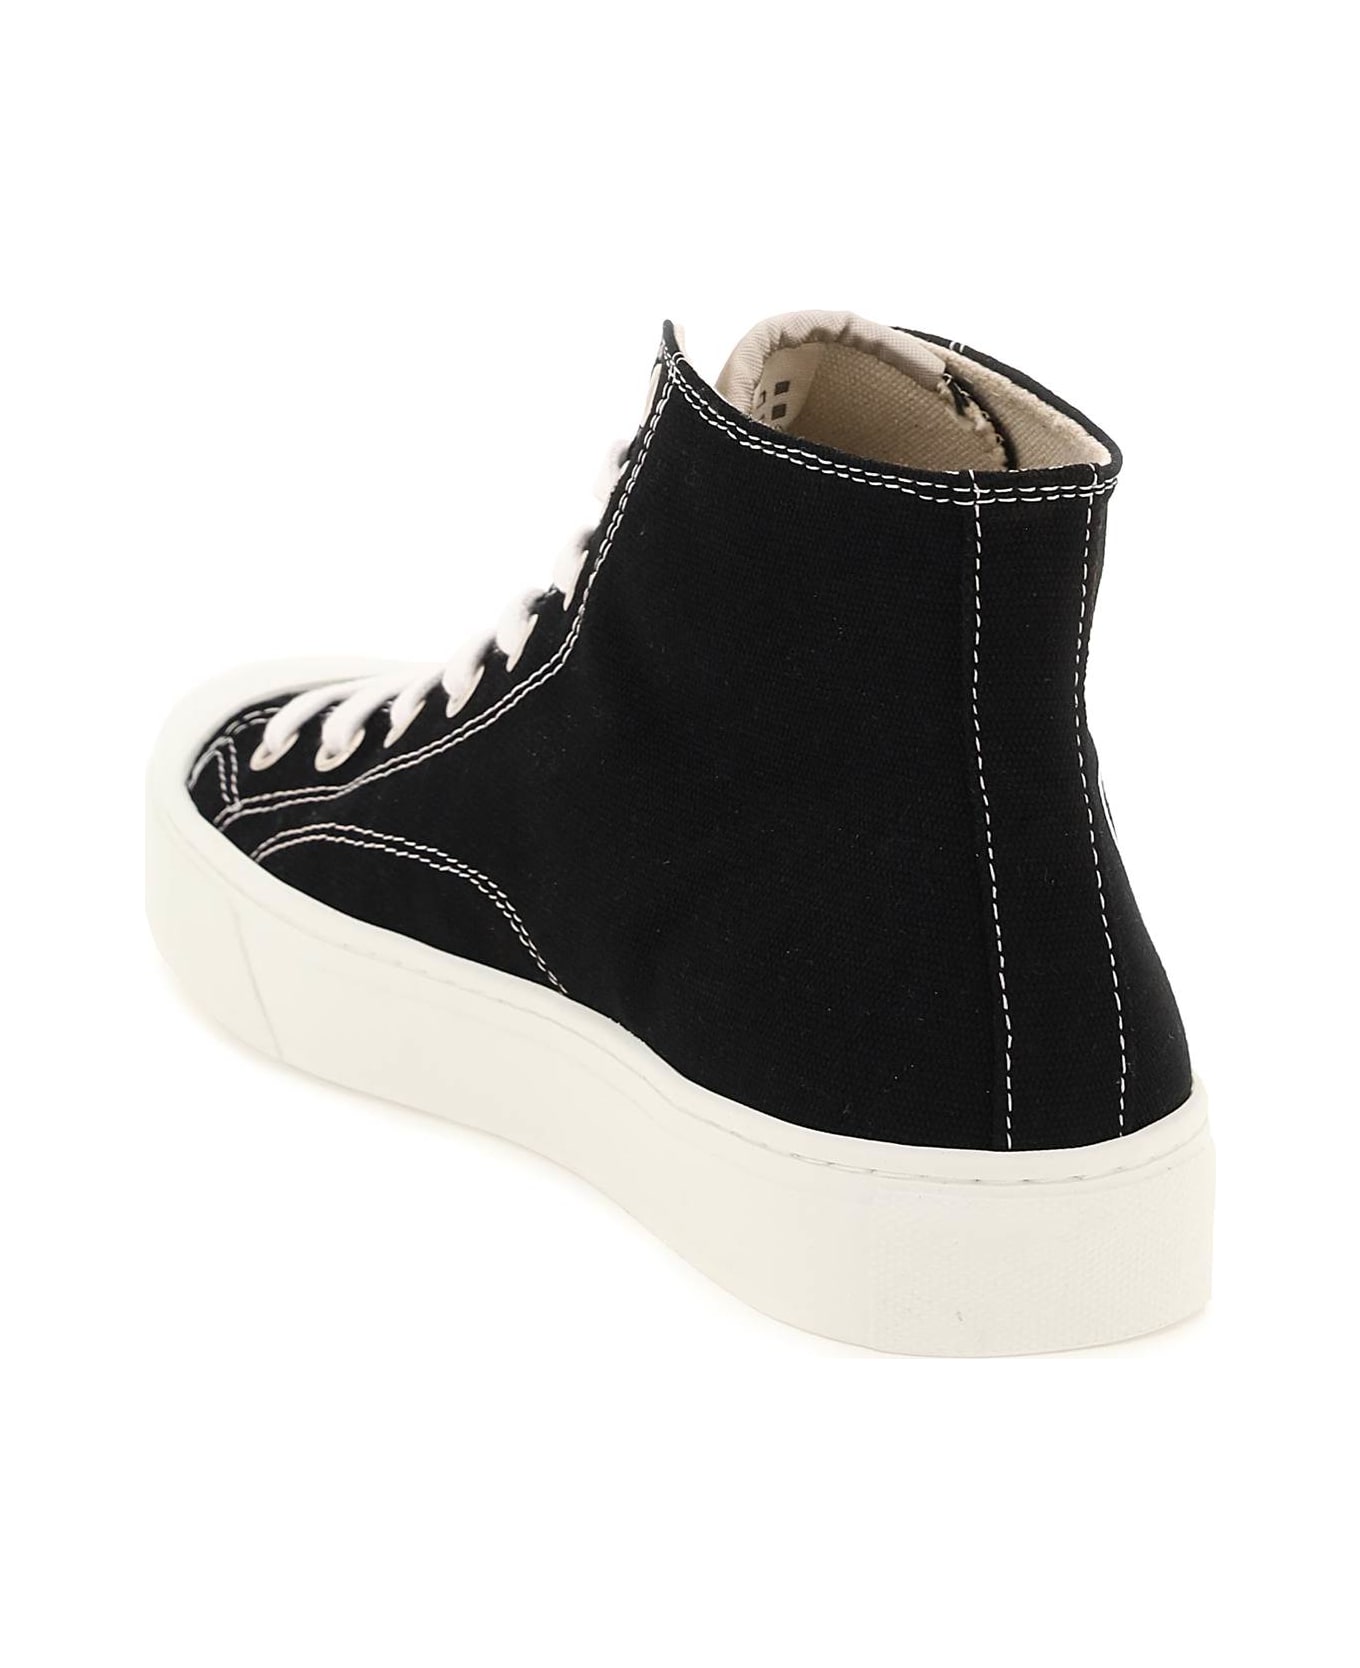 Vivienne Westwood Plimsoll High Top Sneakers - BLACK (Black) スニーカー